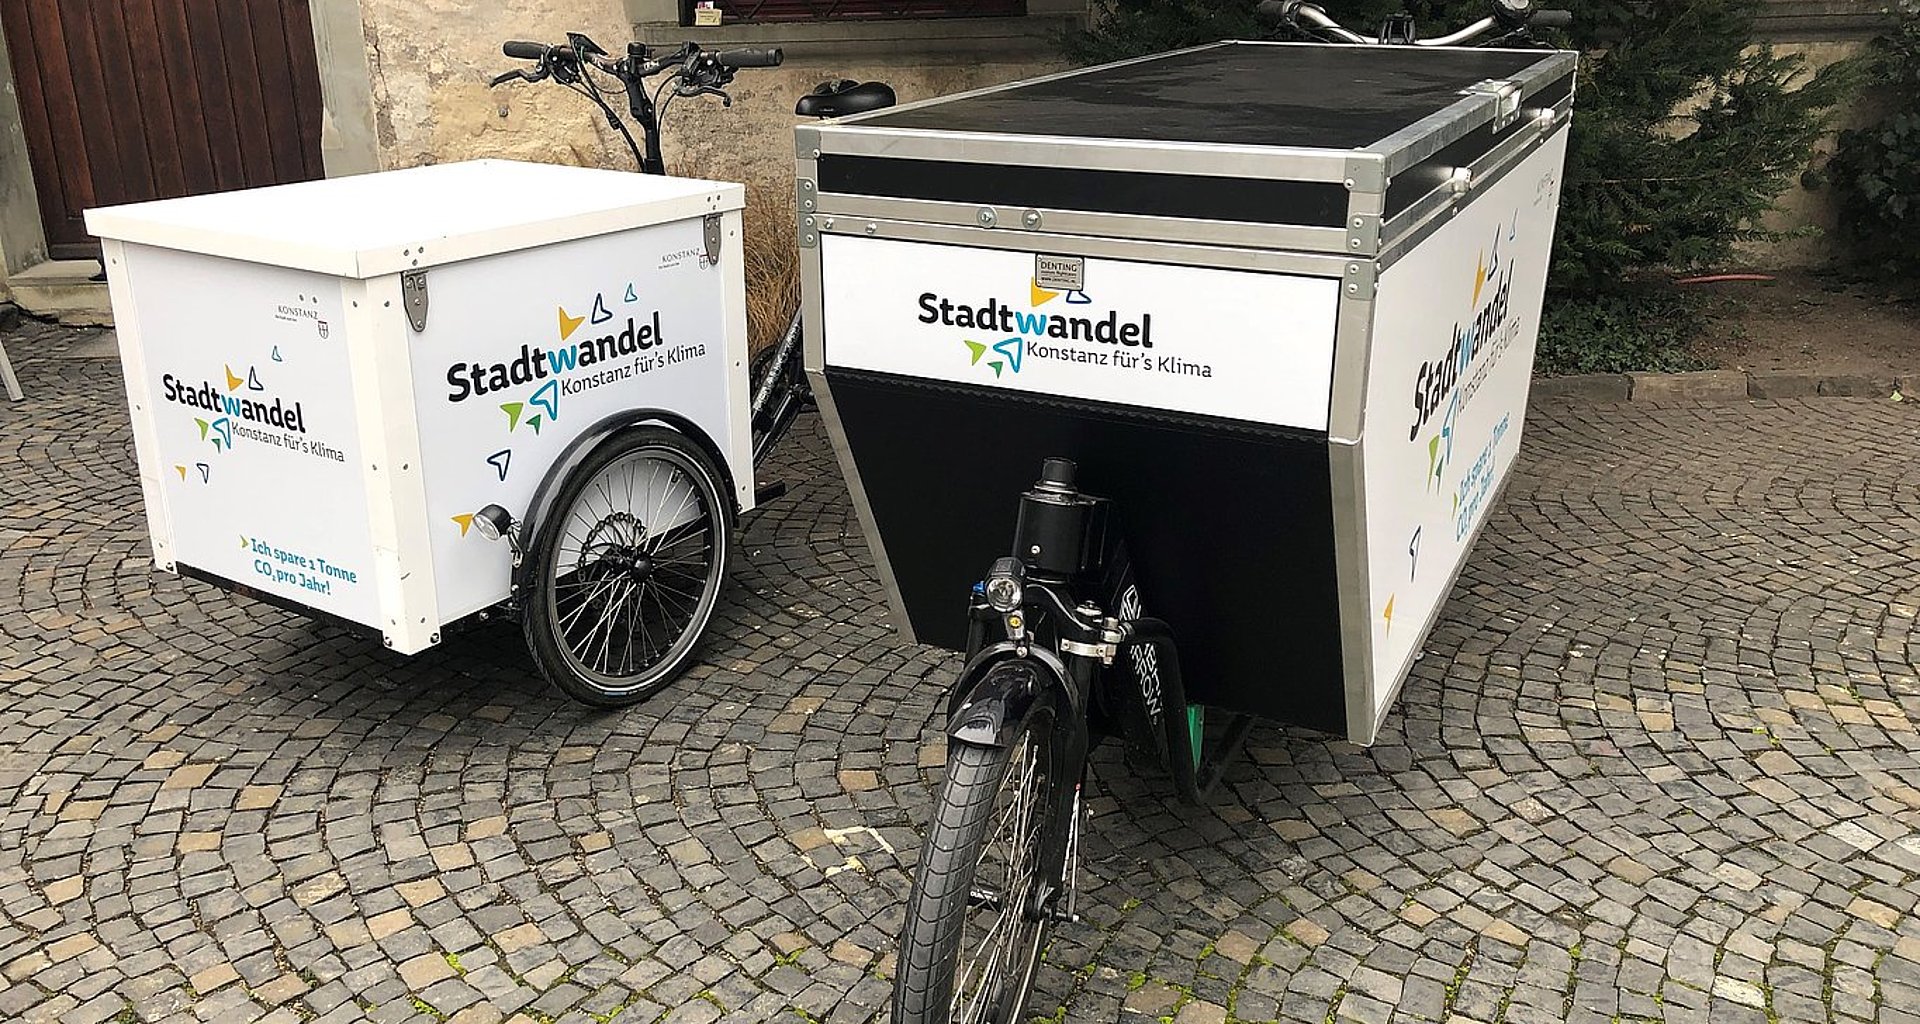 Foto zeigt zwei Lastenräder welche die Aufschrift "Stadtwandel. Konstanz fürs Klima" tragen.